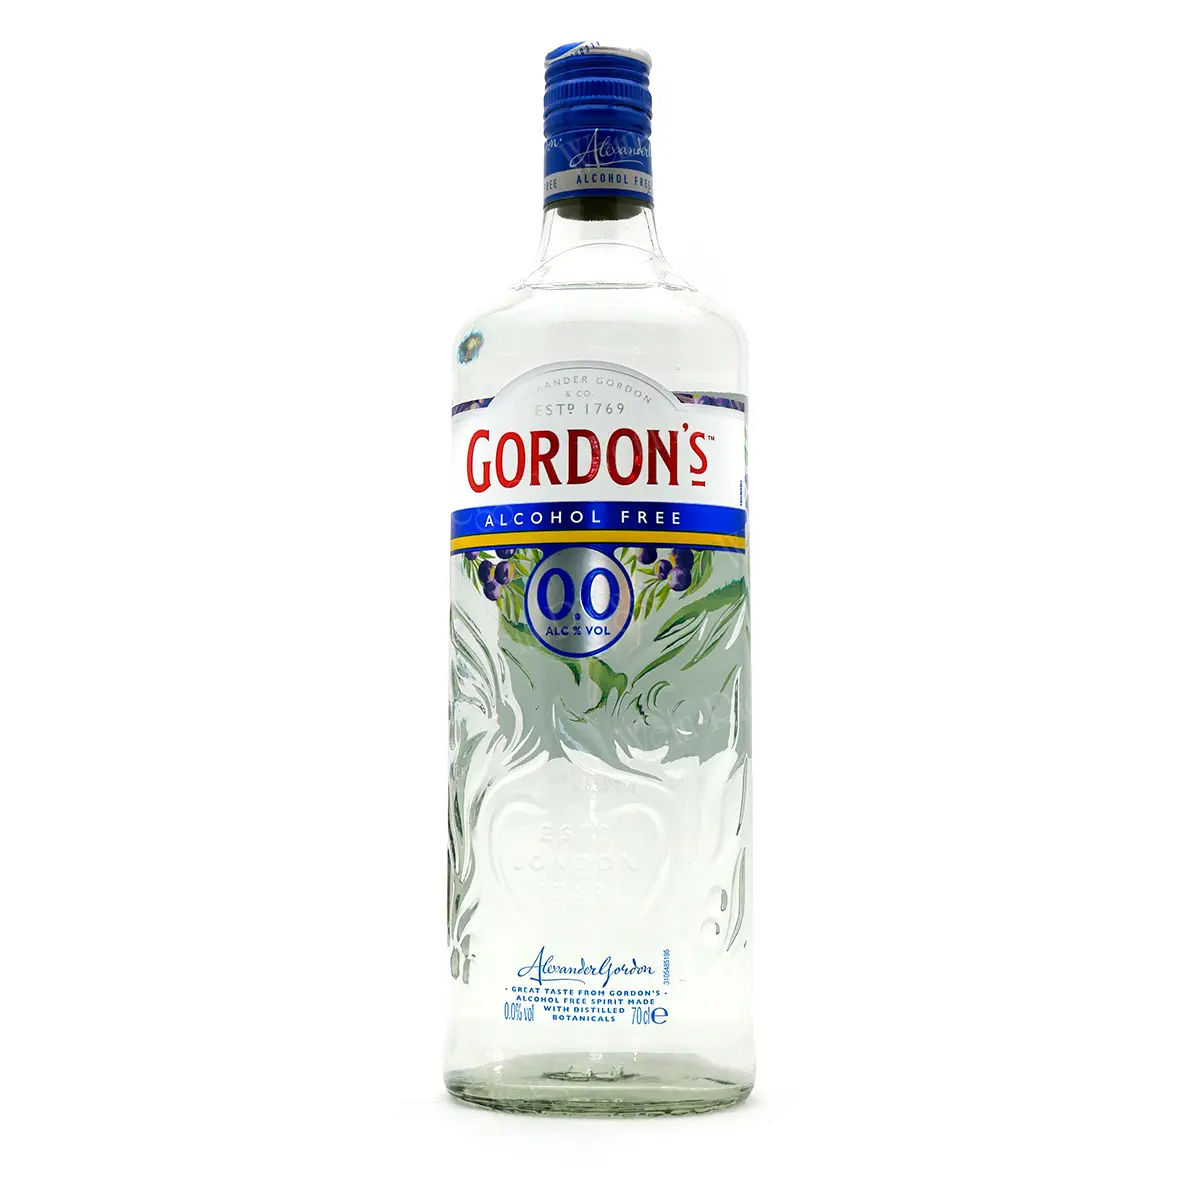 GORDON'S Alcohol Free